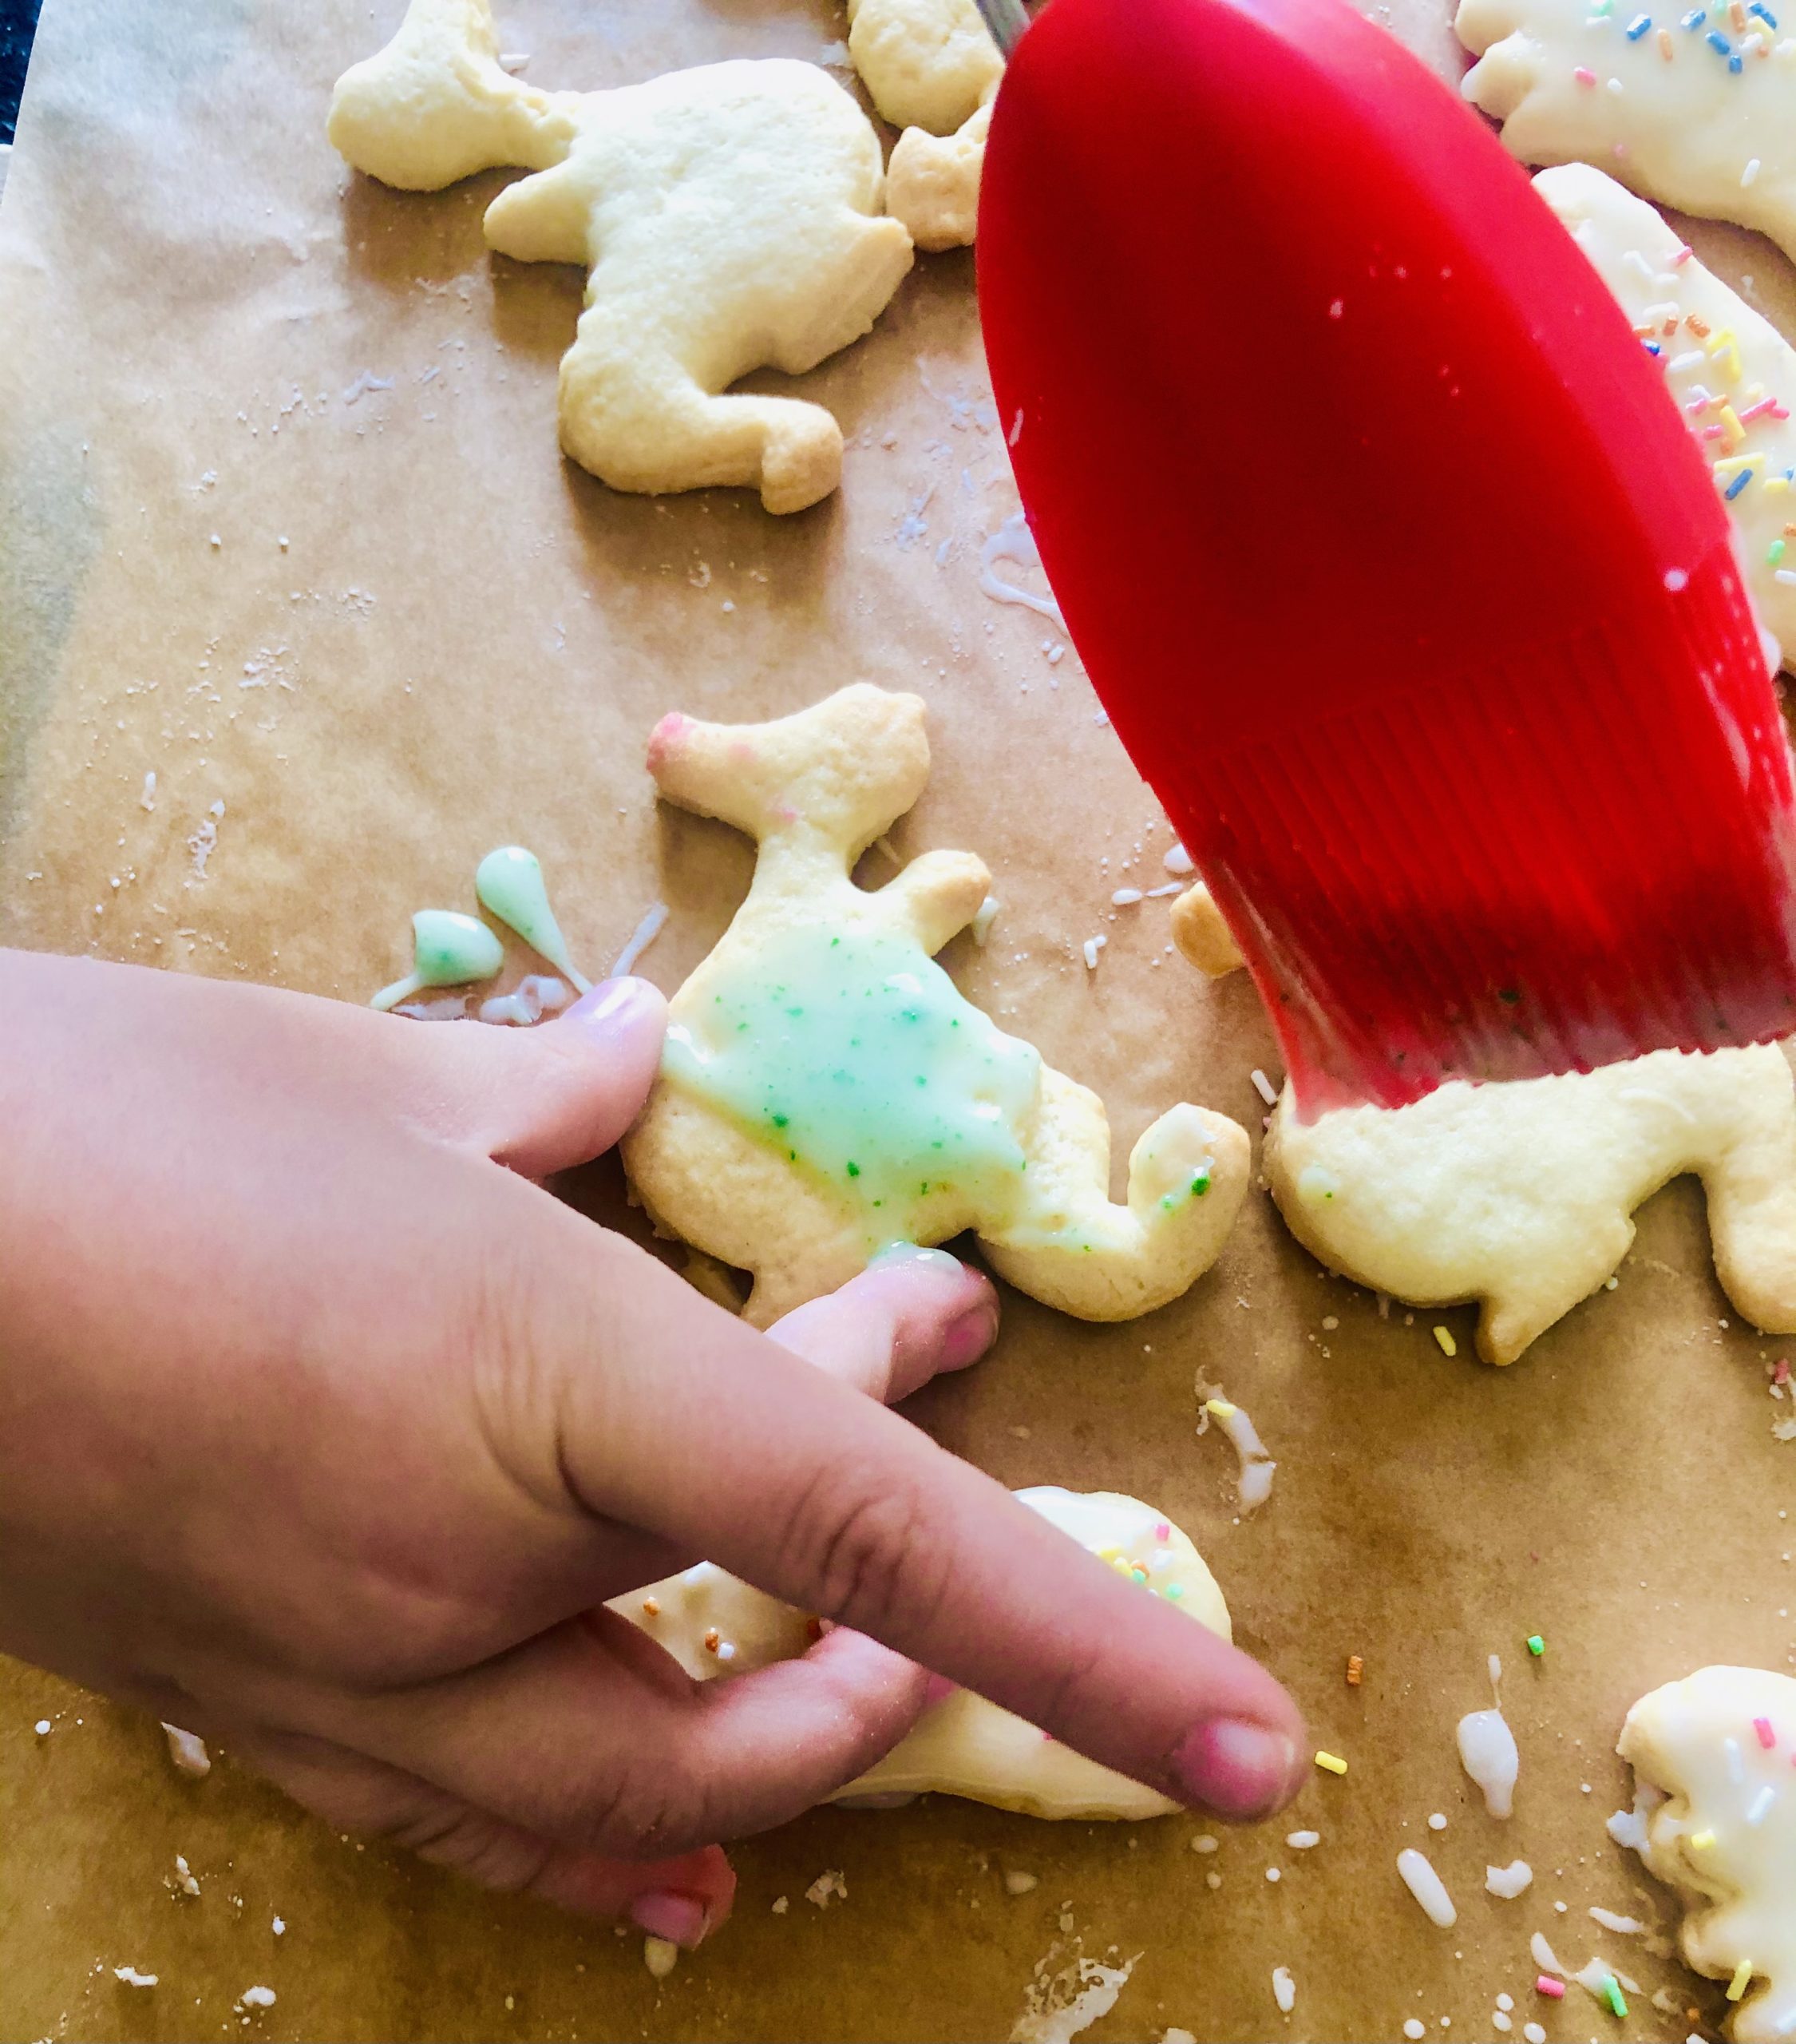 Bild zum Schritt 8 für das Bastel- und DIY-Abenteuer für Kinder: 'Jetzt könnt ihr mit dem Pinsel eure Kekse bestreichen. ...'